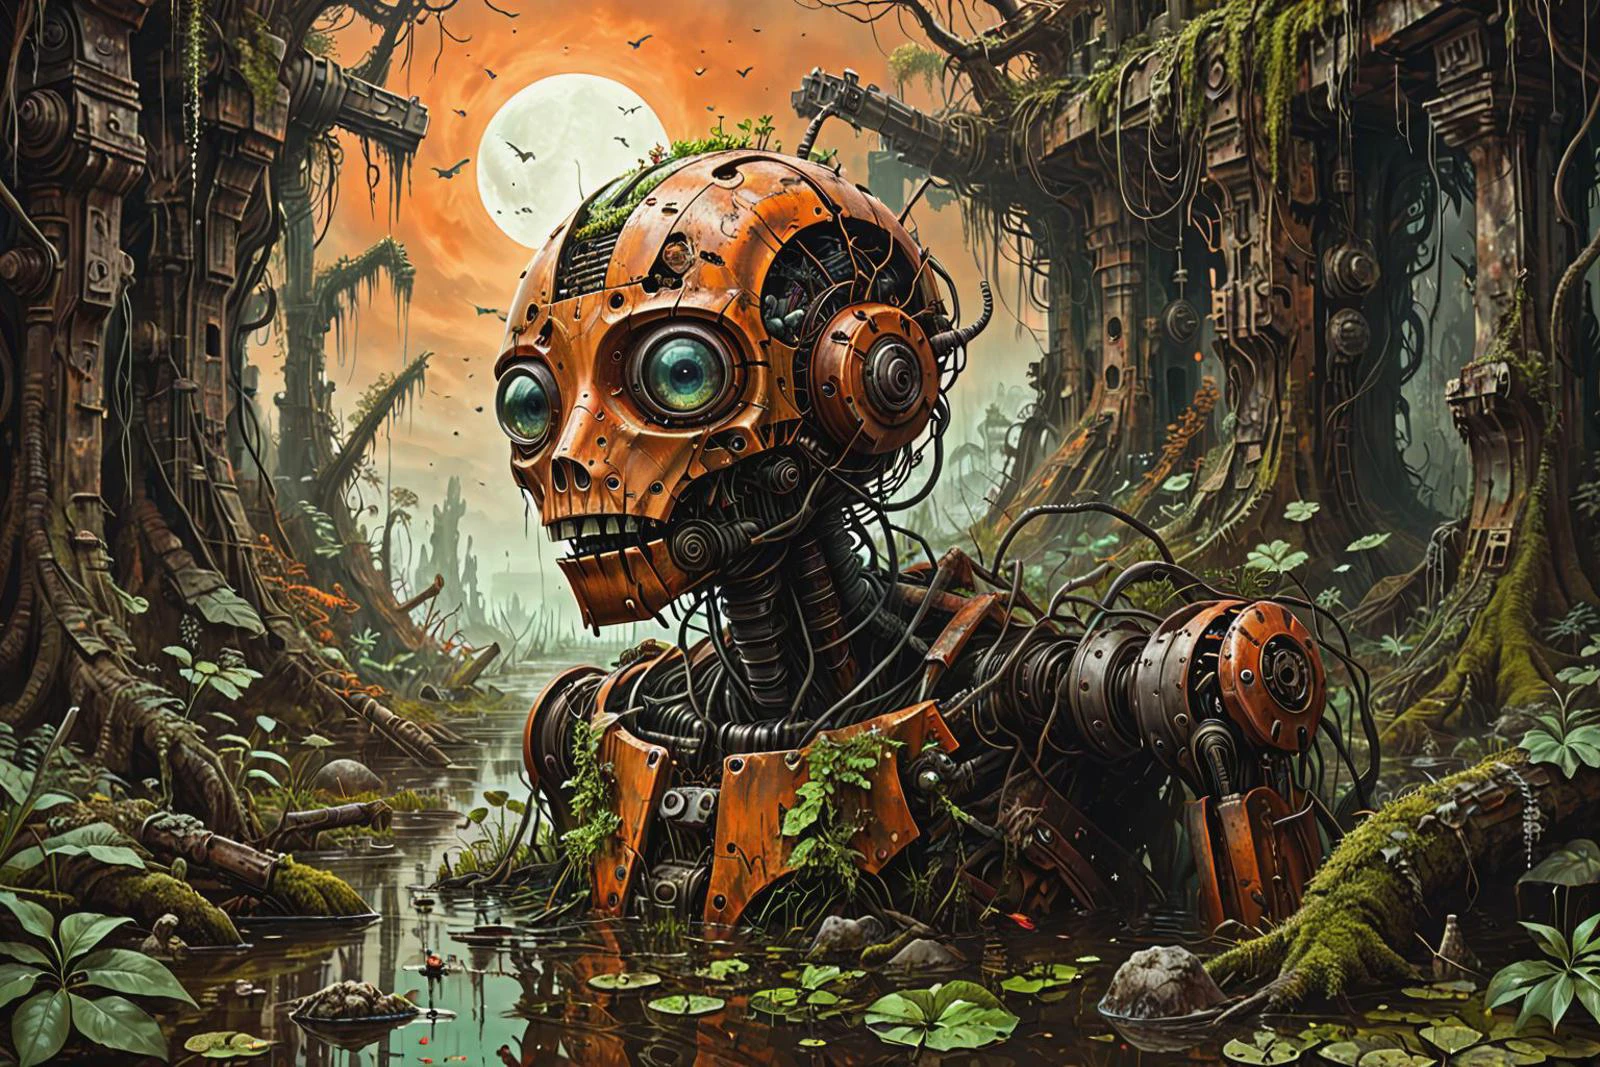 яркая научная иллюстрация фантастического сюрреалистического сломанного ржавого и заросшего военного робота, утонувшего в болоте, уничтоженное оружие, техника, мох, листья, деревья, джунгли, темно-оранжевое небо,
 левая иллюзия